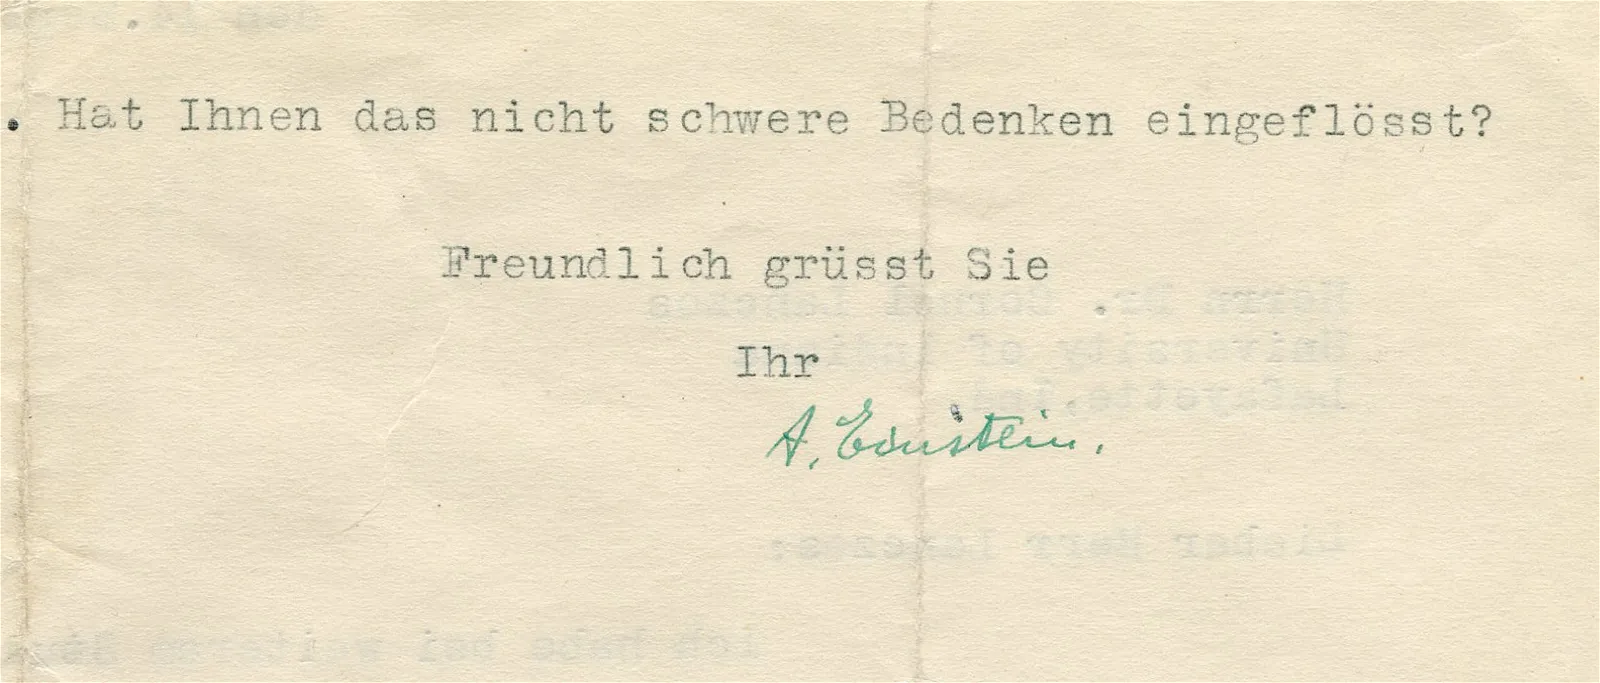 Albert Einstein's signature on a 1935 letter.